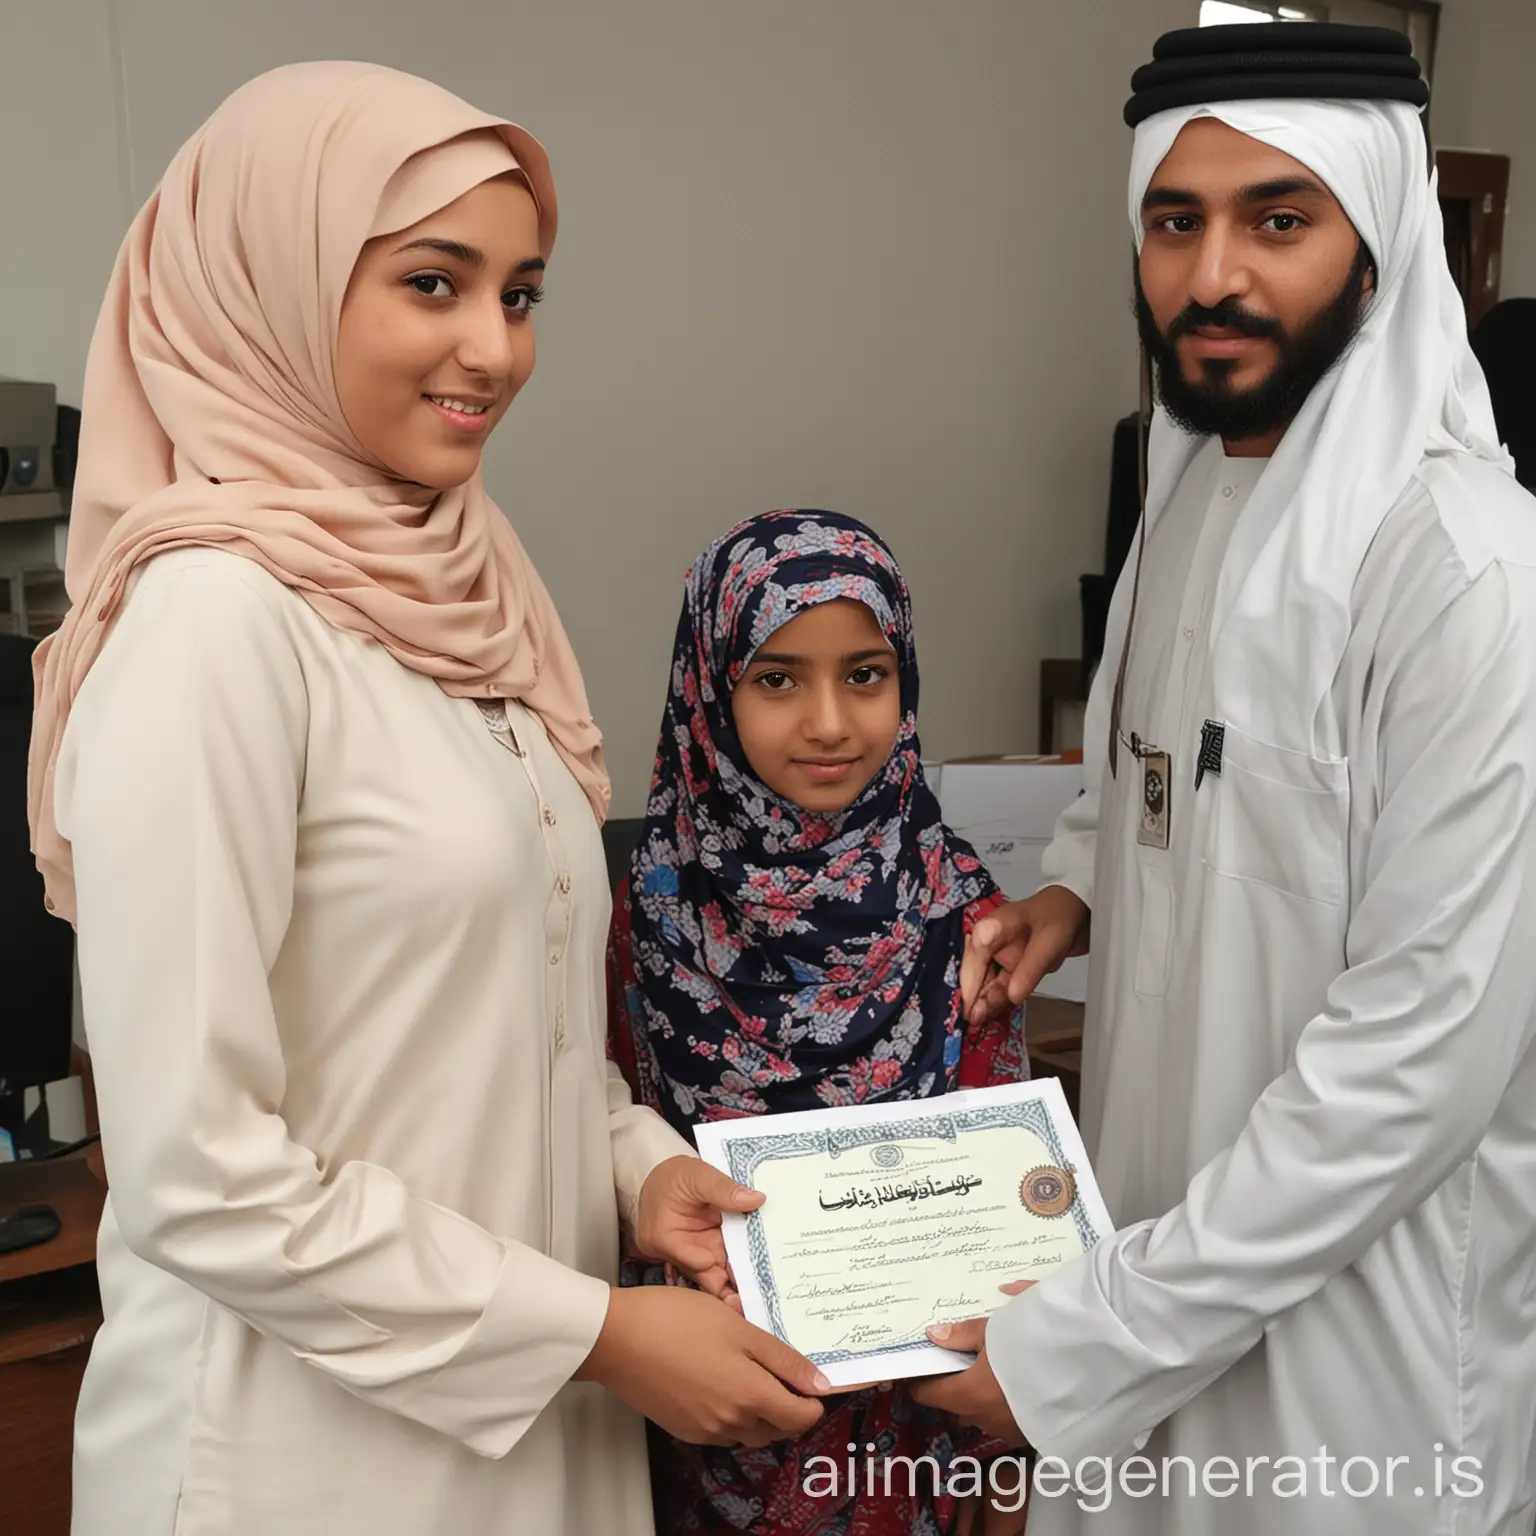 Muslim-Girl-Receiving-Certificate-from-Teacher